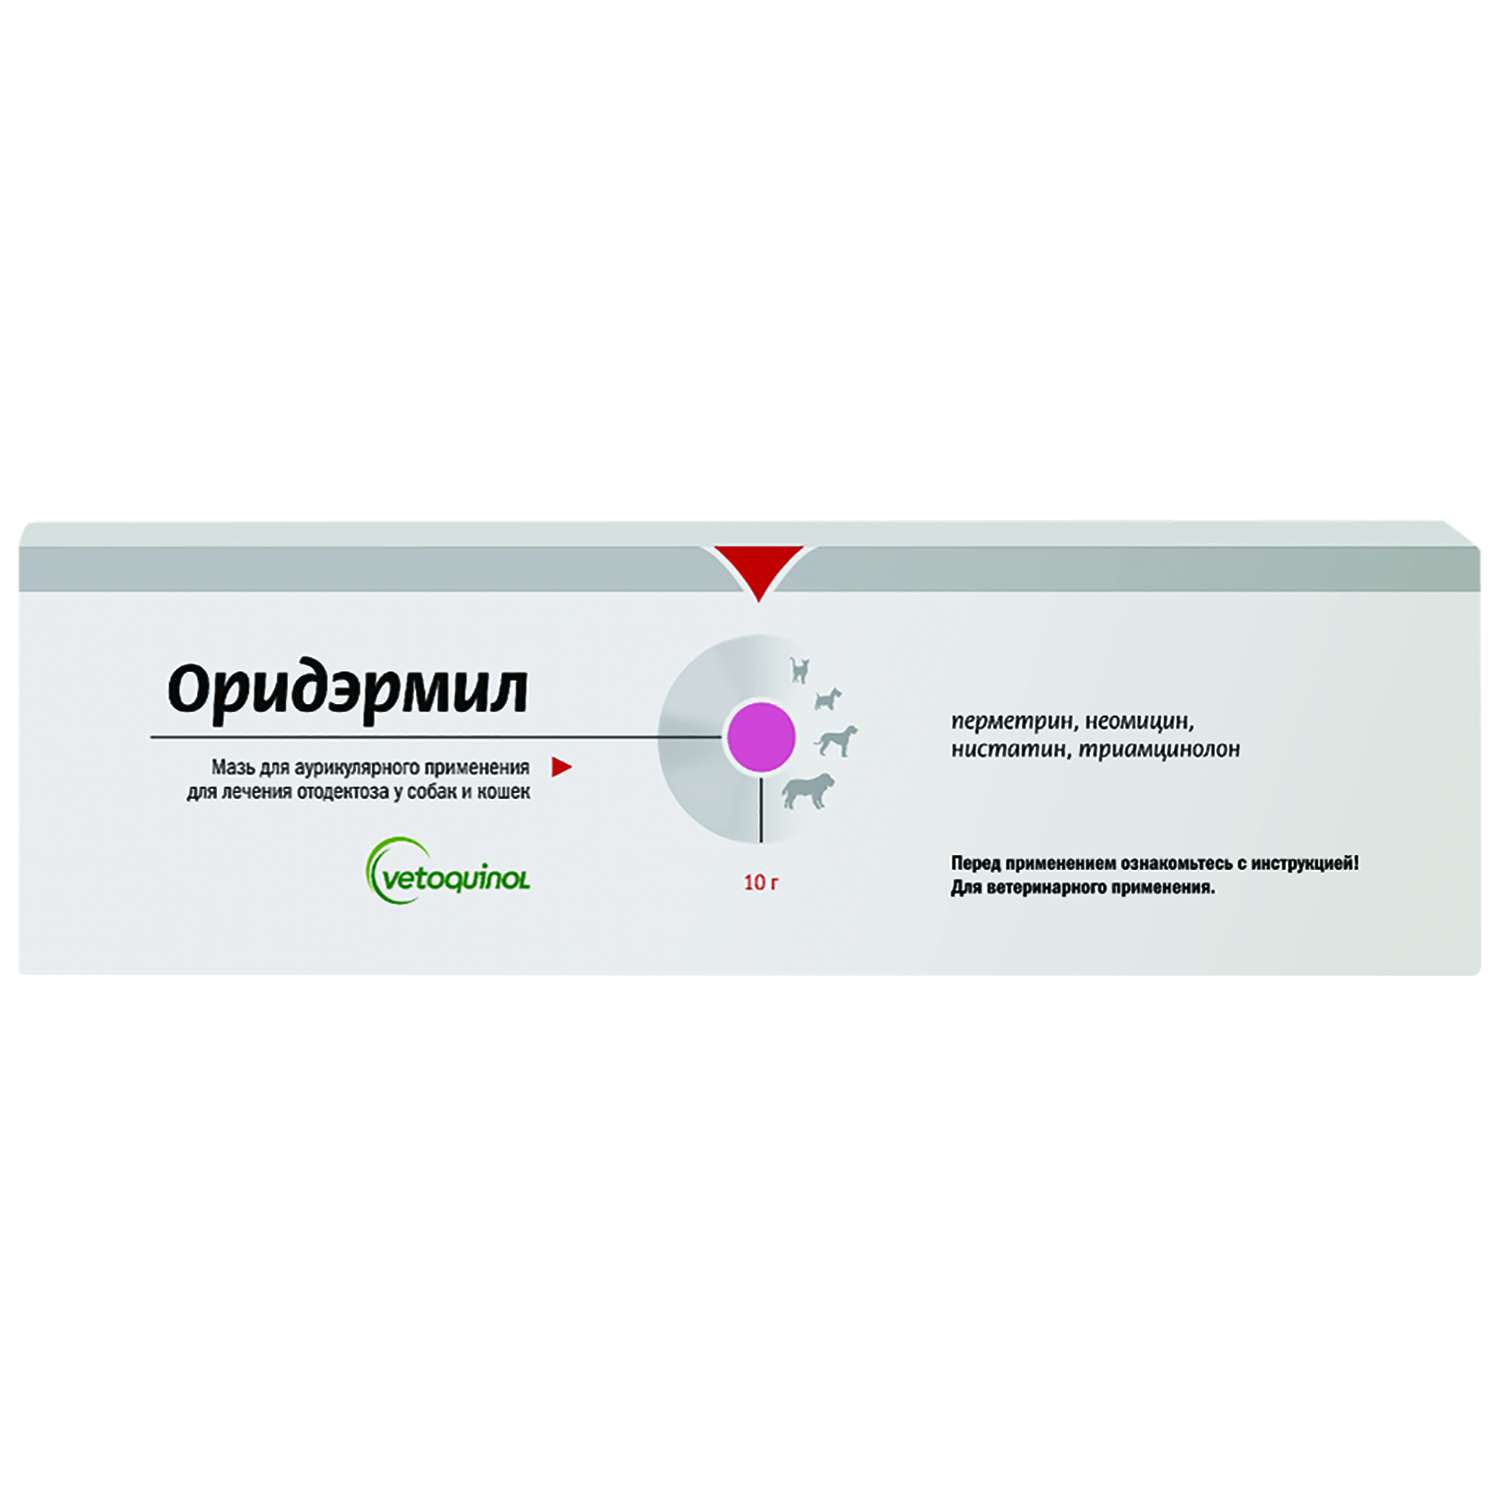 Препарат для лечения отодектоза у кошек и собак Vetoquinol Оридэрмил 10г - фото 1